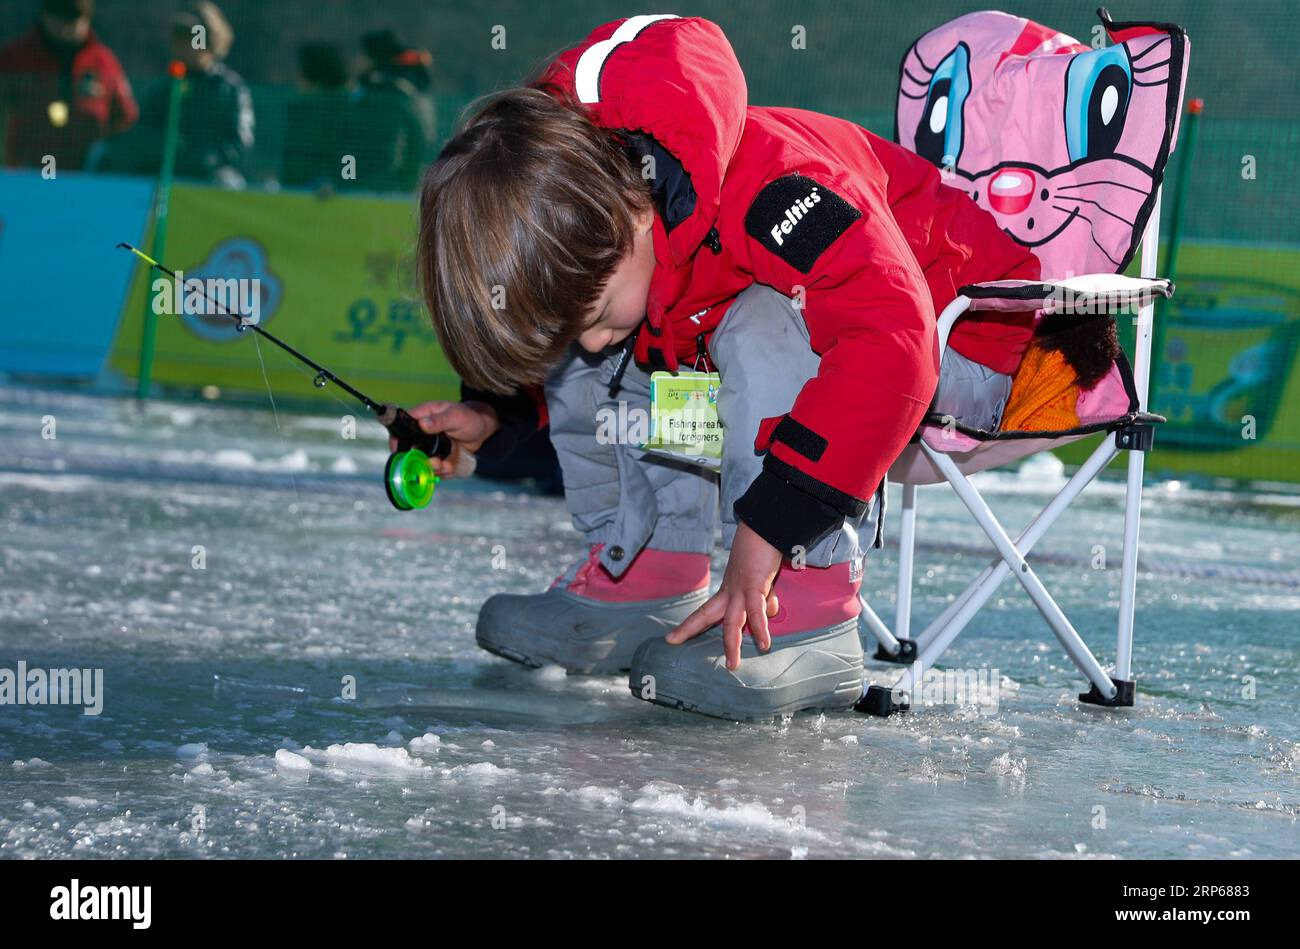 (190105) -- HWACHEON, 5. Januar 2019 -- Ein Junge fischt auf einem gefrorenen Fluss während des Sancheoneo Ice Festivals in Hwacheon, Südkorea, 5. Januar 2019 nach Forellen. Als eines der größten Winterereignisse Südkoreas zieht das jährliche dreiwöchige Festival die Menschen zum gefrorenen Hwacheon-Fluss, wo die Organisatoren während der Festivalzeit Angellöcher im Eis bohren und Forellen in den Fluss werfen. Dieses Jahr dauert das Festival vom 5. Januar bis 27. Januar. ) SÜDKOREA-HWACHEON-SANCHEONEO ICE FESTIVAL WANGXJINGQIANG PUBLICATIONXNOTXINXCHN Stockfoto